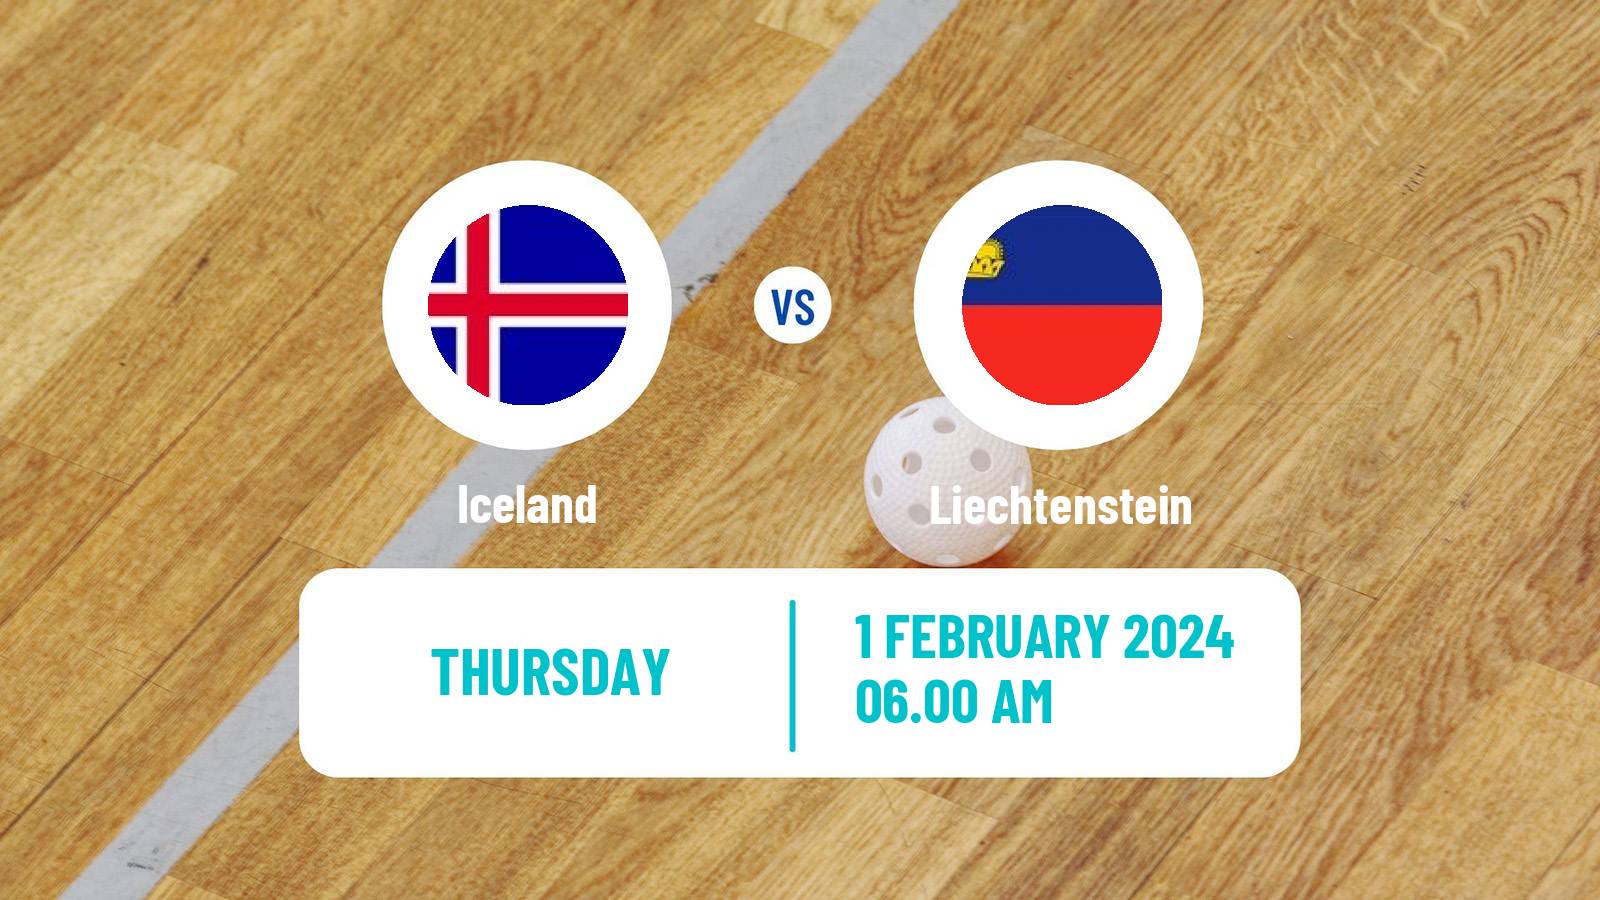 Floorball World Championship Floorball Iceland - Liechtenstein